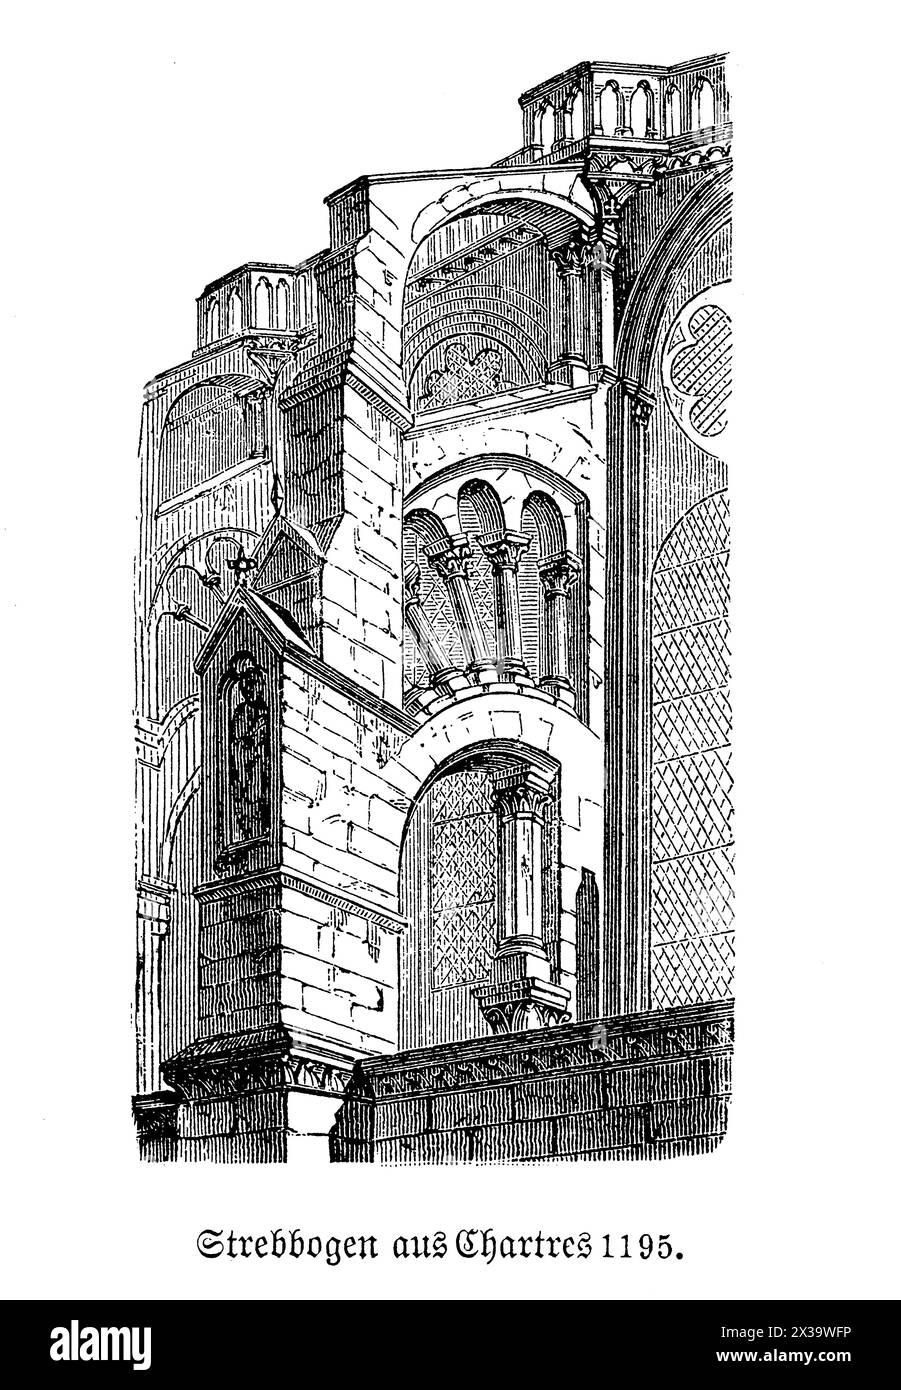 Die fliegende Stütze der Kathedrale von Chartres ist ein beispielhaftes Merkmal gotischer Architektur, die die hohen Wände der Kathedrale stützen und größere Fenster und mehr Licht ermöglichen soll. Dieses architektonische Element in Chartres, Frankreich, ist sowohl funktional als auch ästhetisch beeindruckend und zeichnet sich durch sein bogenförmiges Design aus, das sich vom Hauptgebäude bis zum Pier erstreckt. Die Stützen sind nicht nur entscheidend für die strukturelle Integrität, sondern auch wunderschön dekoriert, oft mit komplizierten Schnitzereien und Statuen, die das majestätische Aussehen der Kathedrale unterstreichen Stockfoto